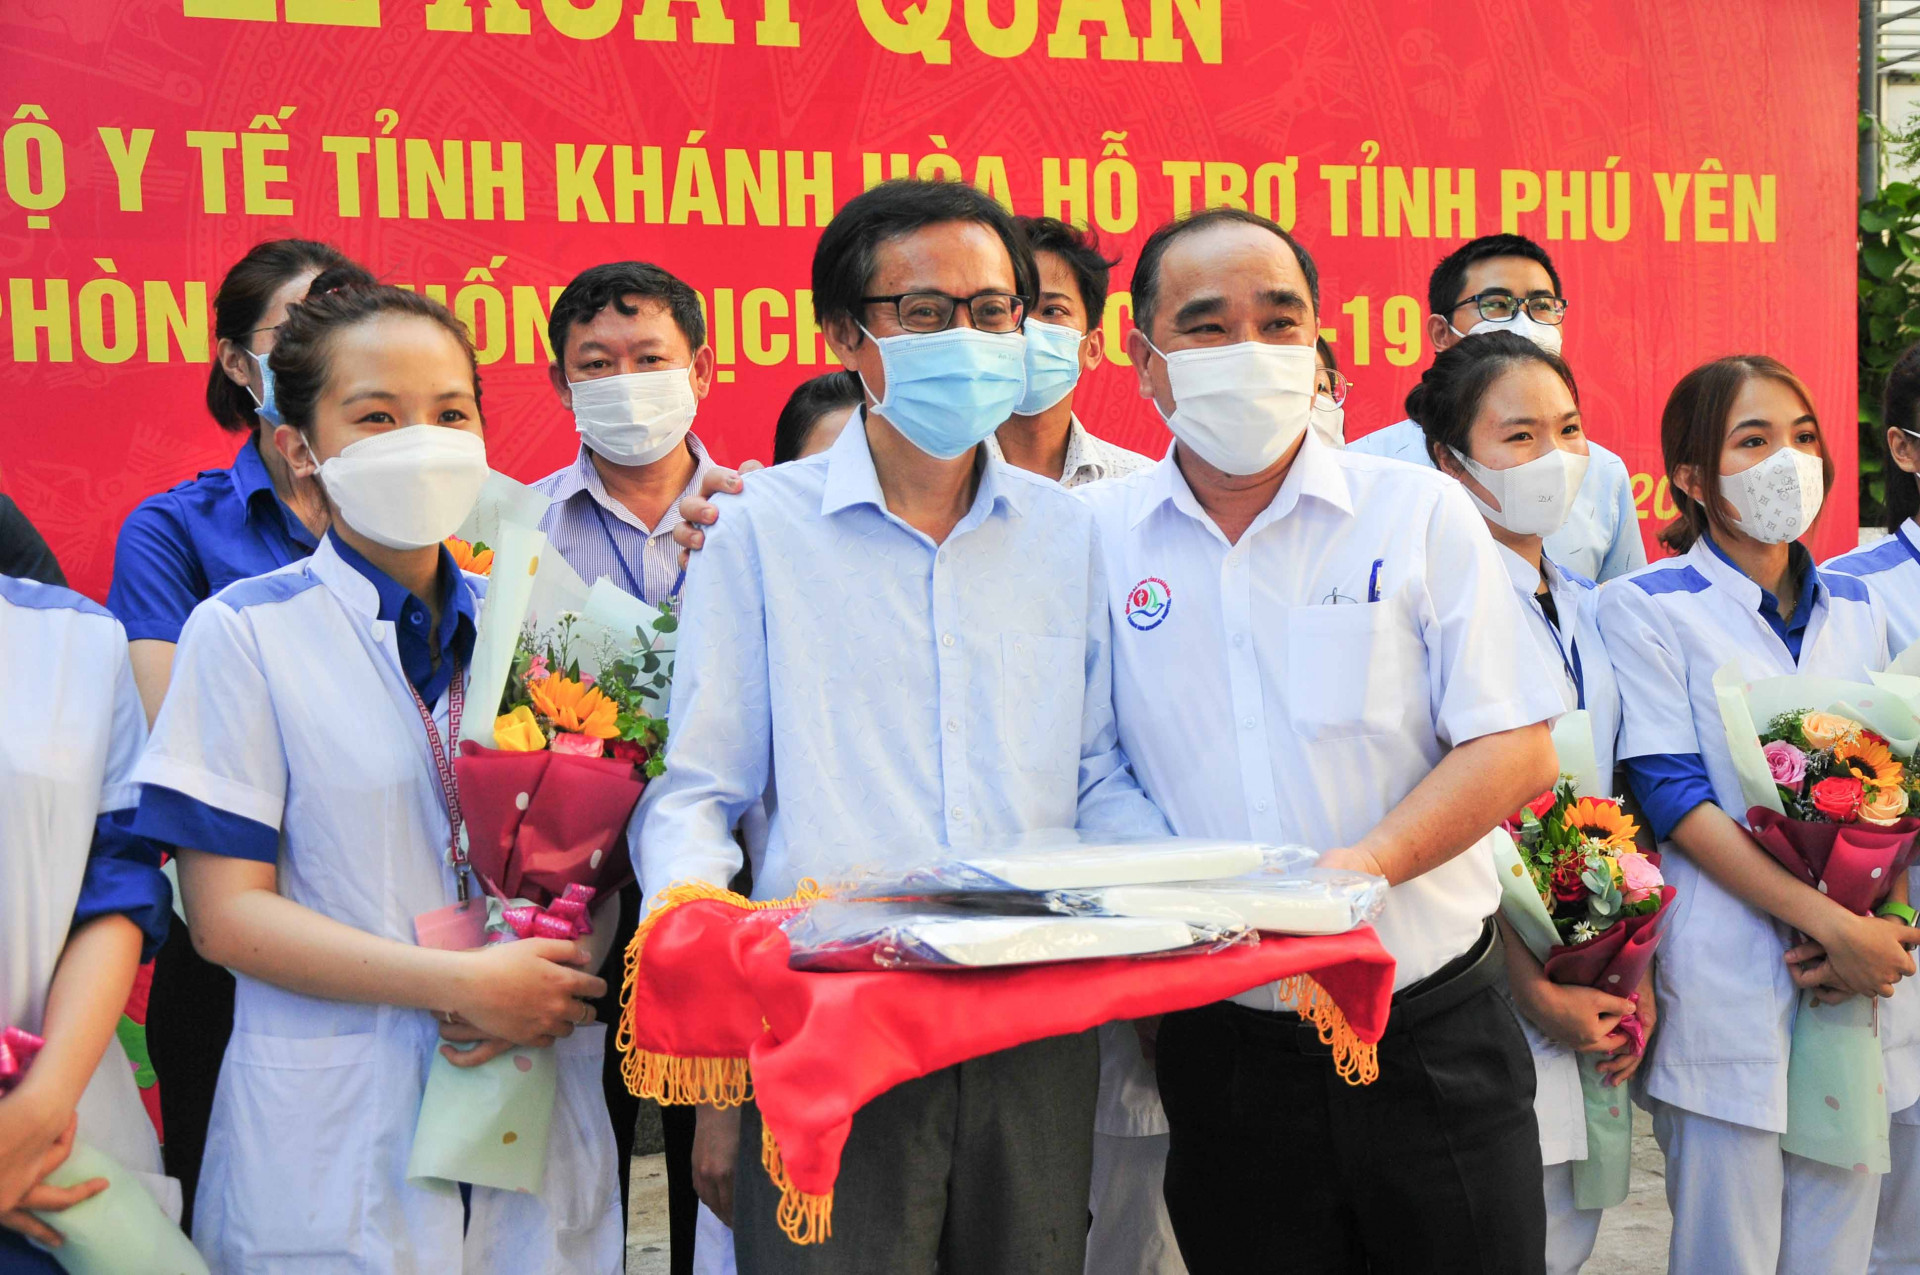 Lãnh đạo Bệnh viện Đa khoa tỉnh trao tặng mặt nạ bảo hộ cho đoàn công tác